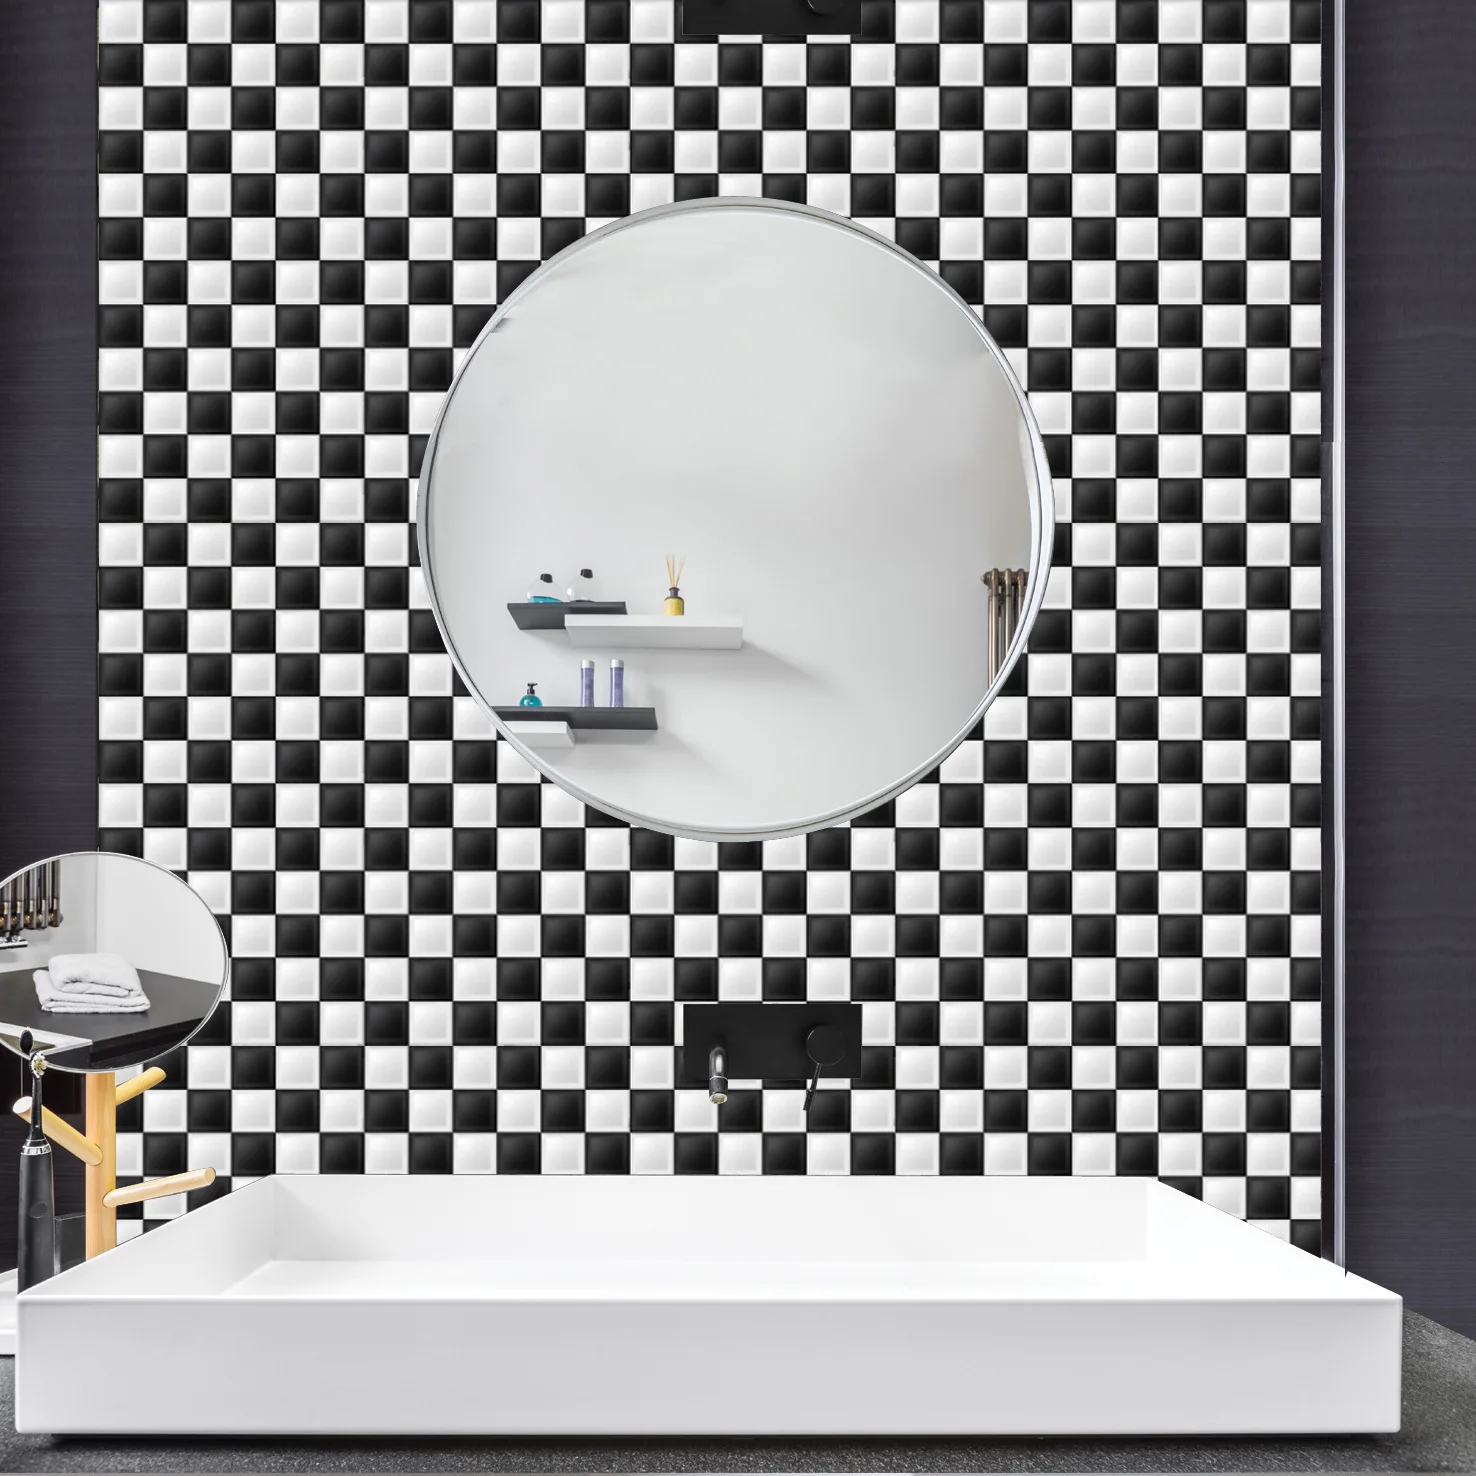 6 шт 3D стерео настенные наклейки самоклеящиеся обои моделирование мозаичная плитка самоклейка самоклеющиеся кухонные стикеры Водонепроницаемый 20x20 см